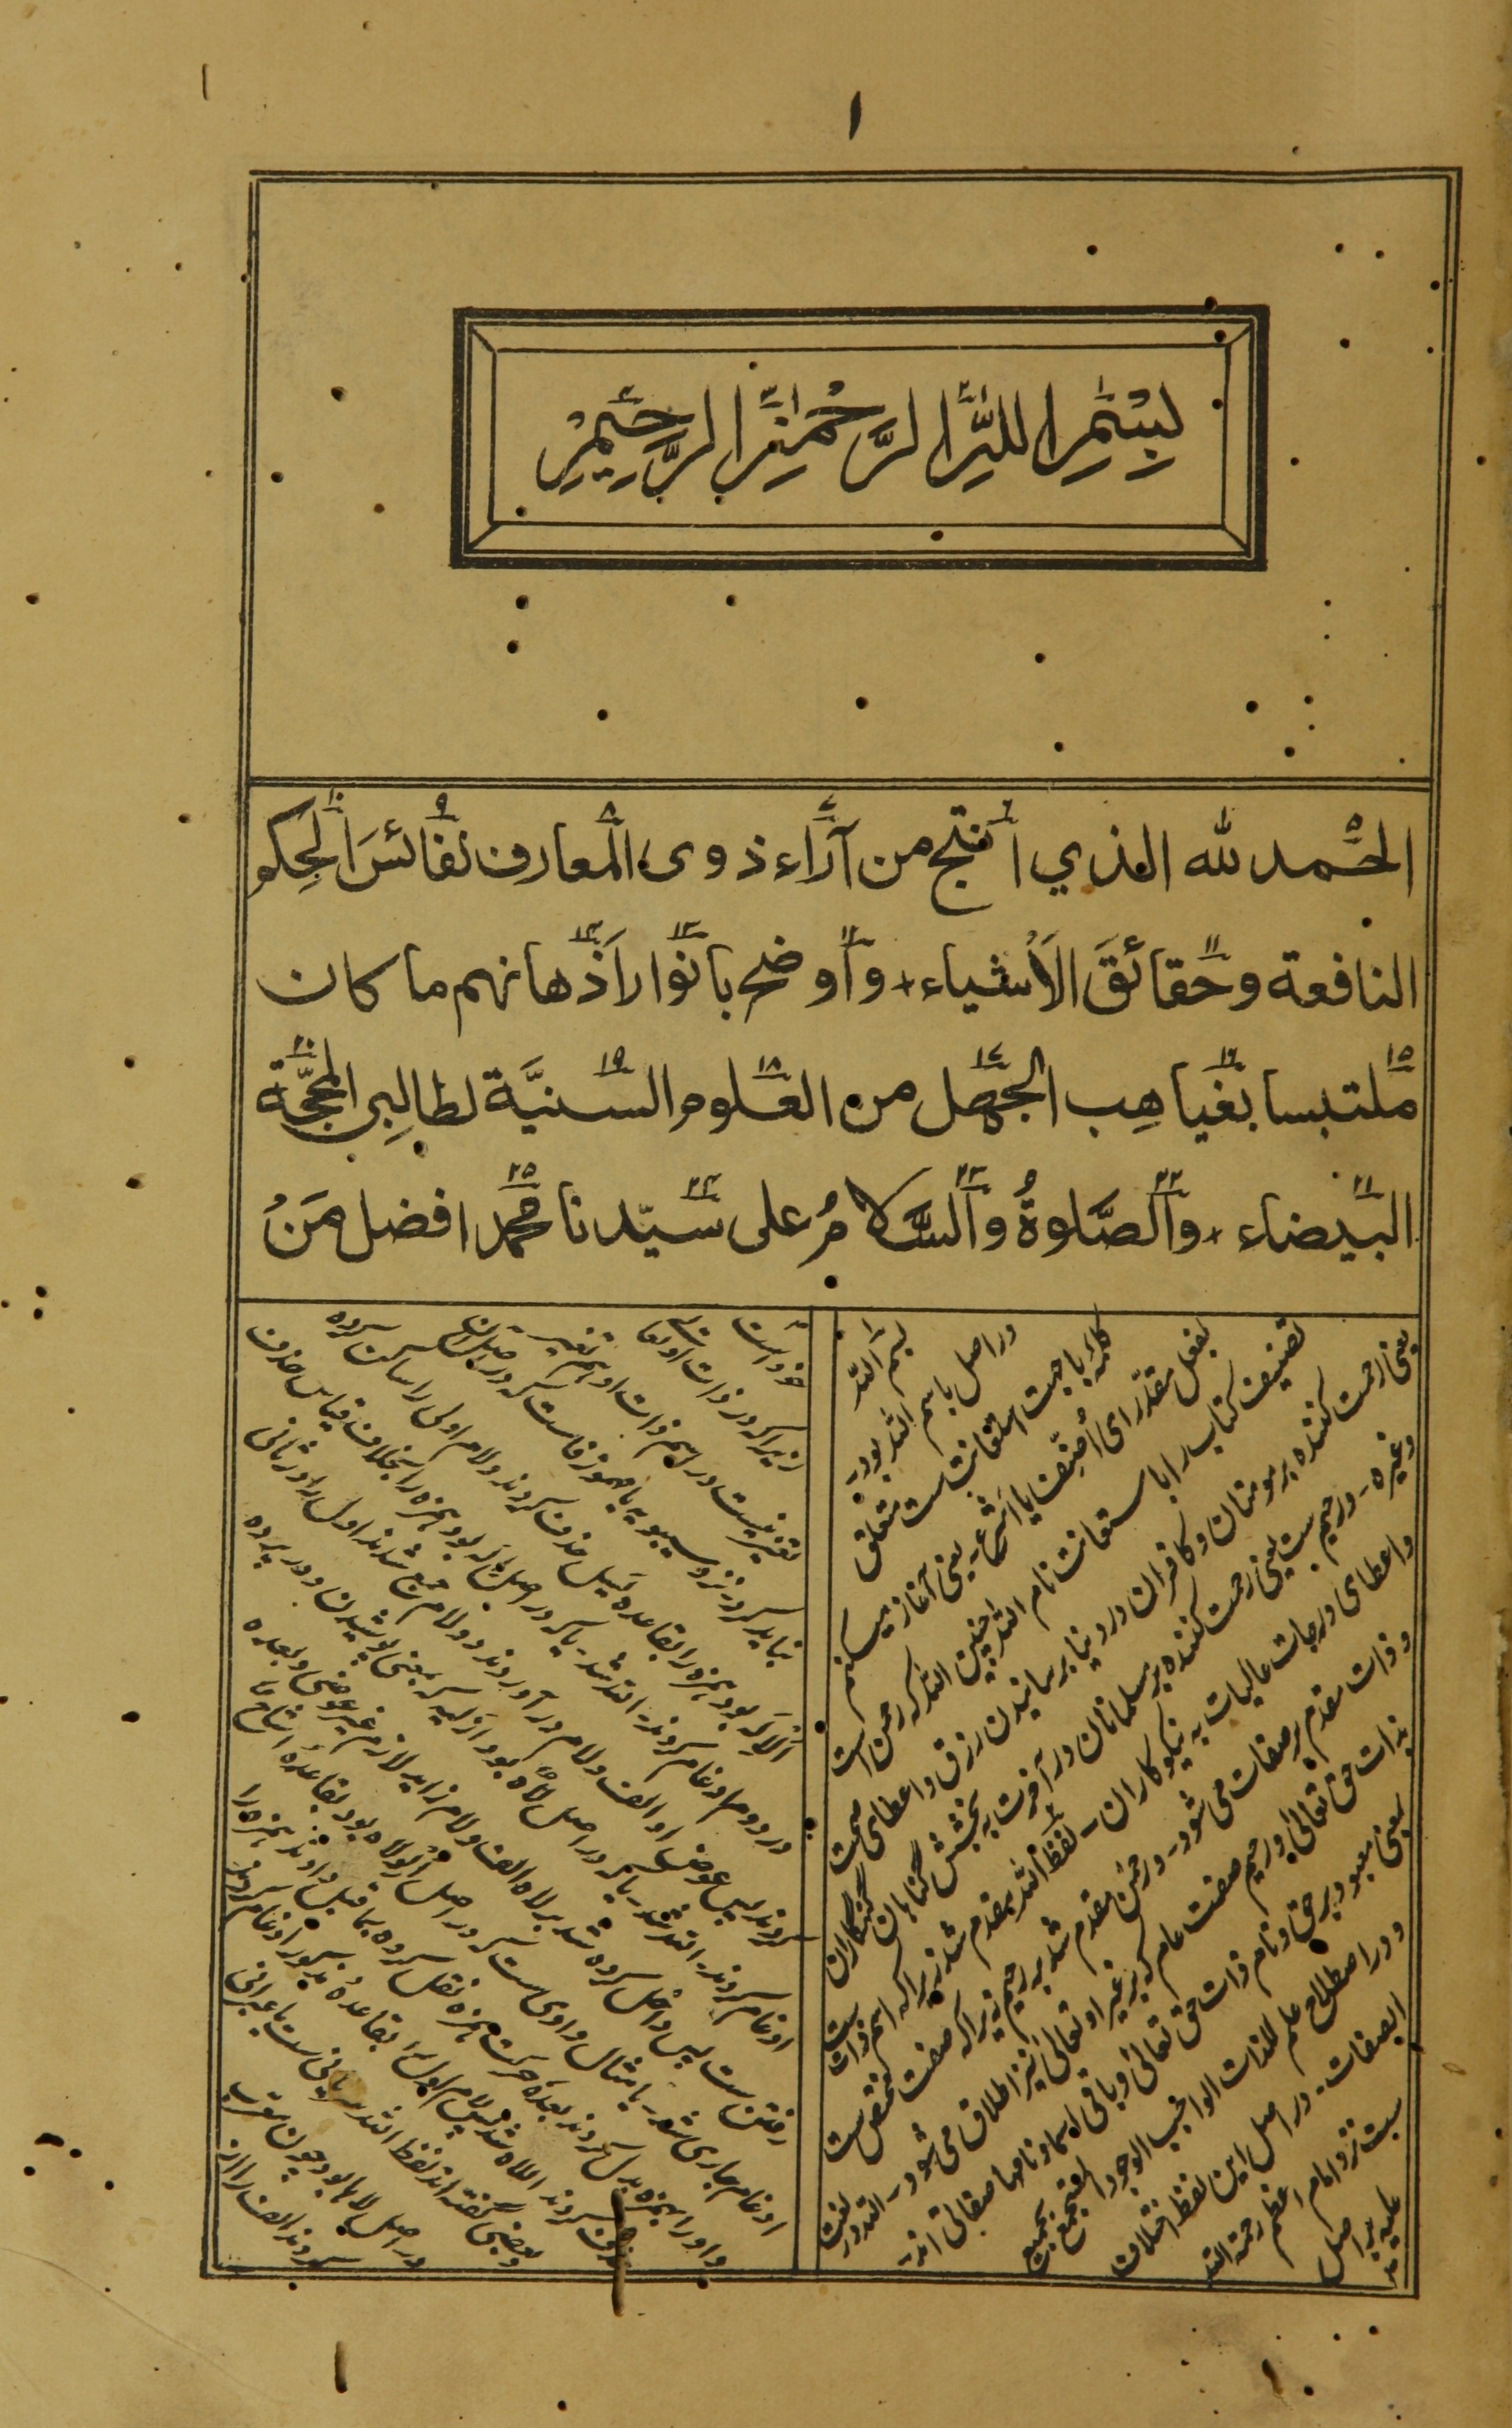 Aṭṭafayyish, Muḥammad ibn Yūsuf, 1820 or 1821-1914. Risālah shāfiyah fī baʻd al-tawārīkh. [al-Jazāʼir] : [Bakīr ibn Qāsim al-Qarārī], 1299 [1881 or 1882]].